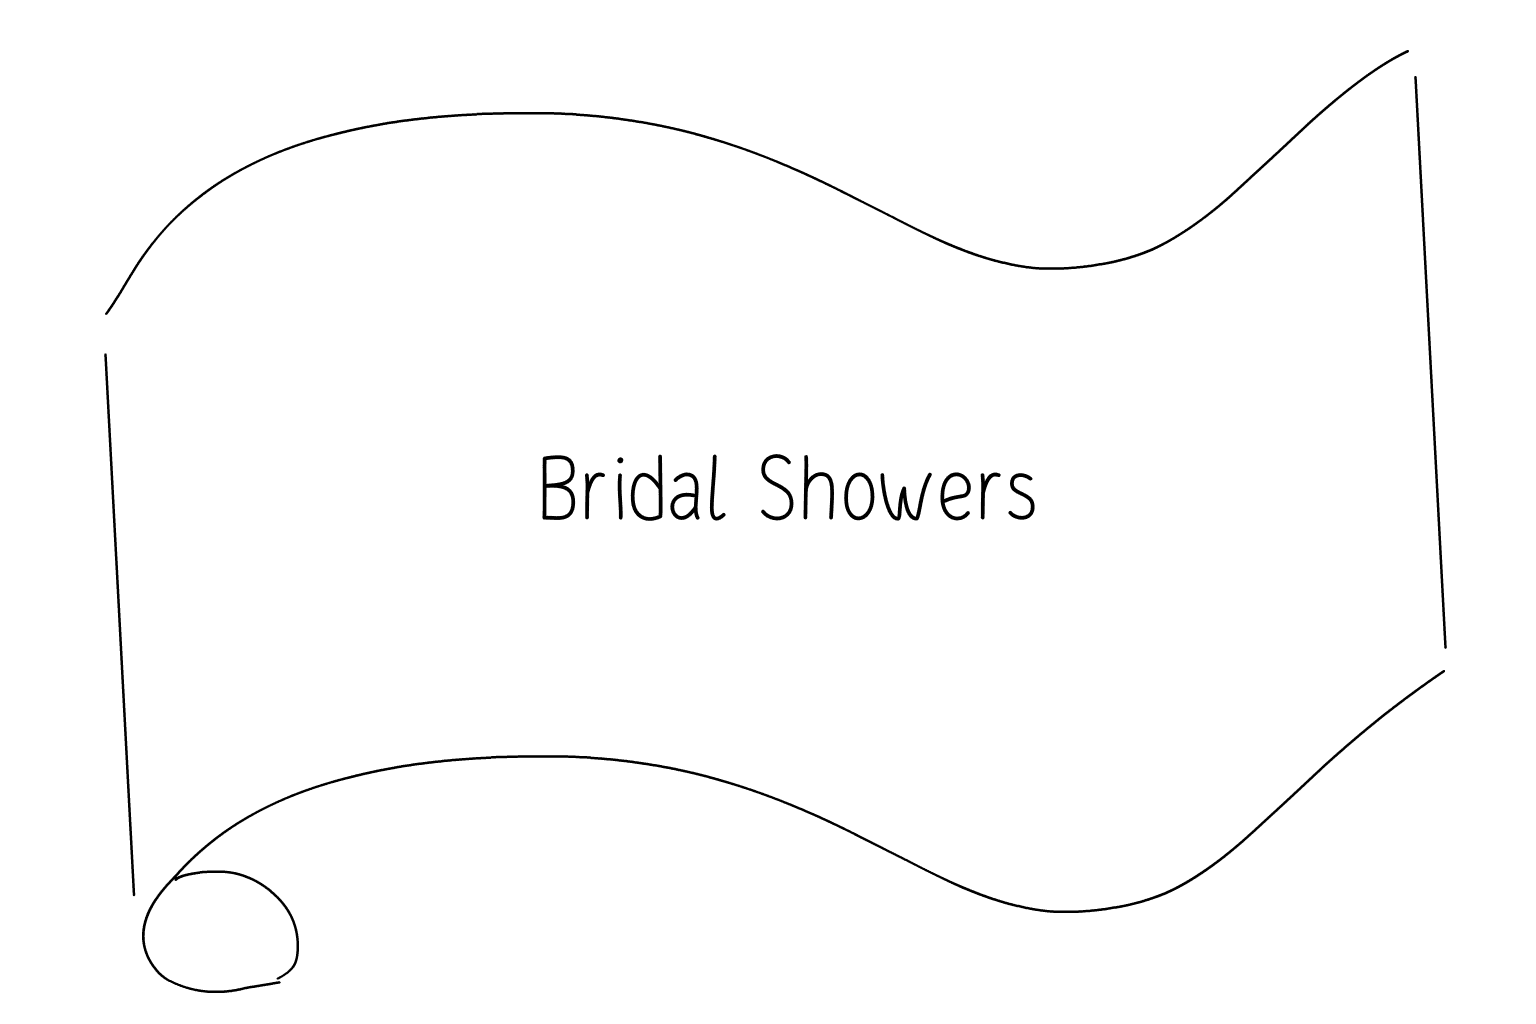 Illustration of Bridal Shower Vendors